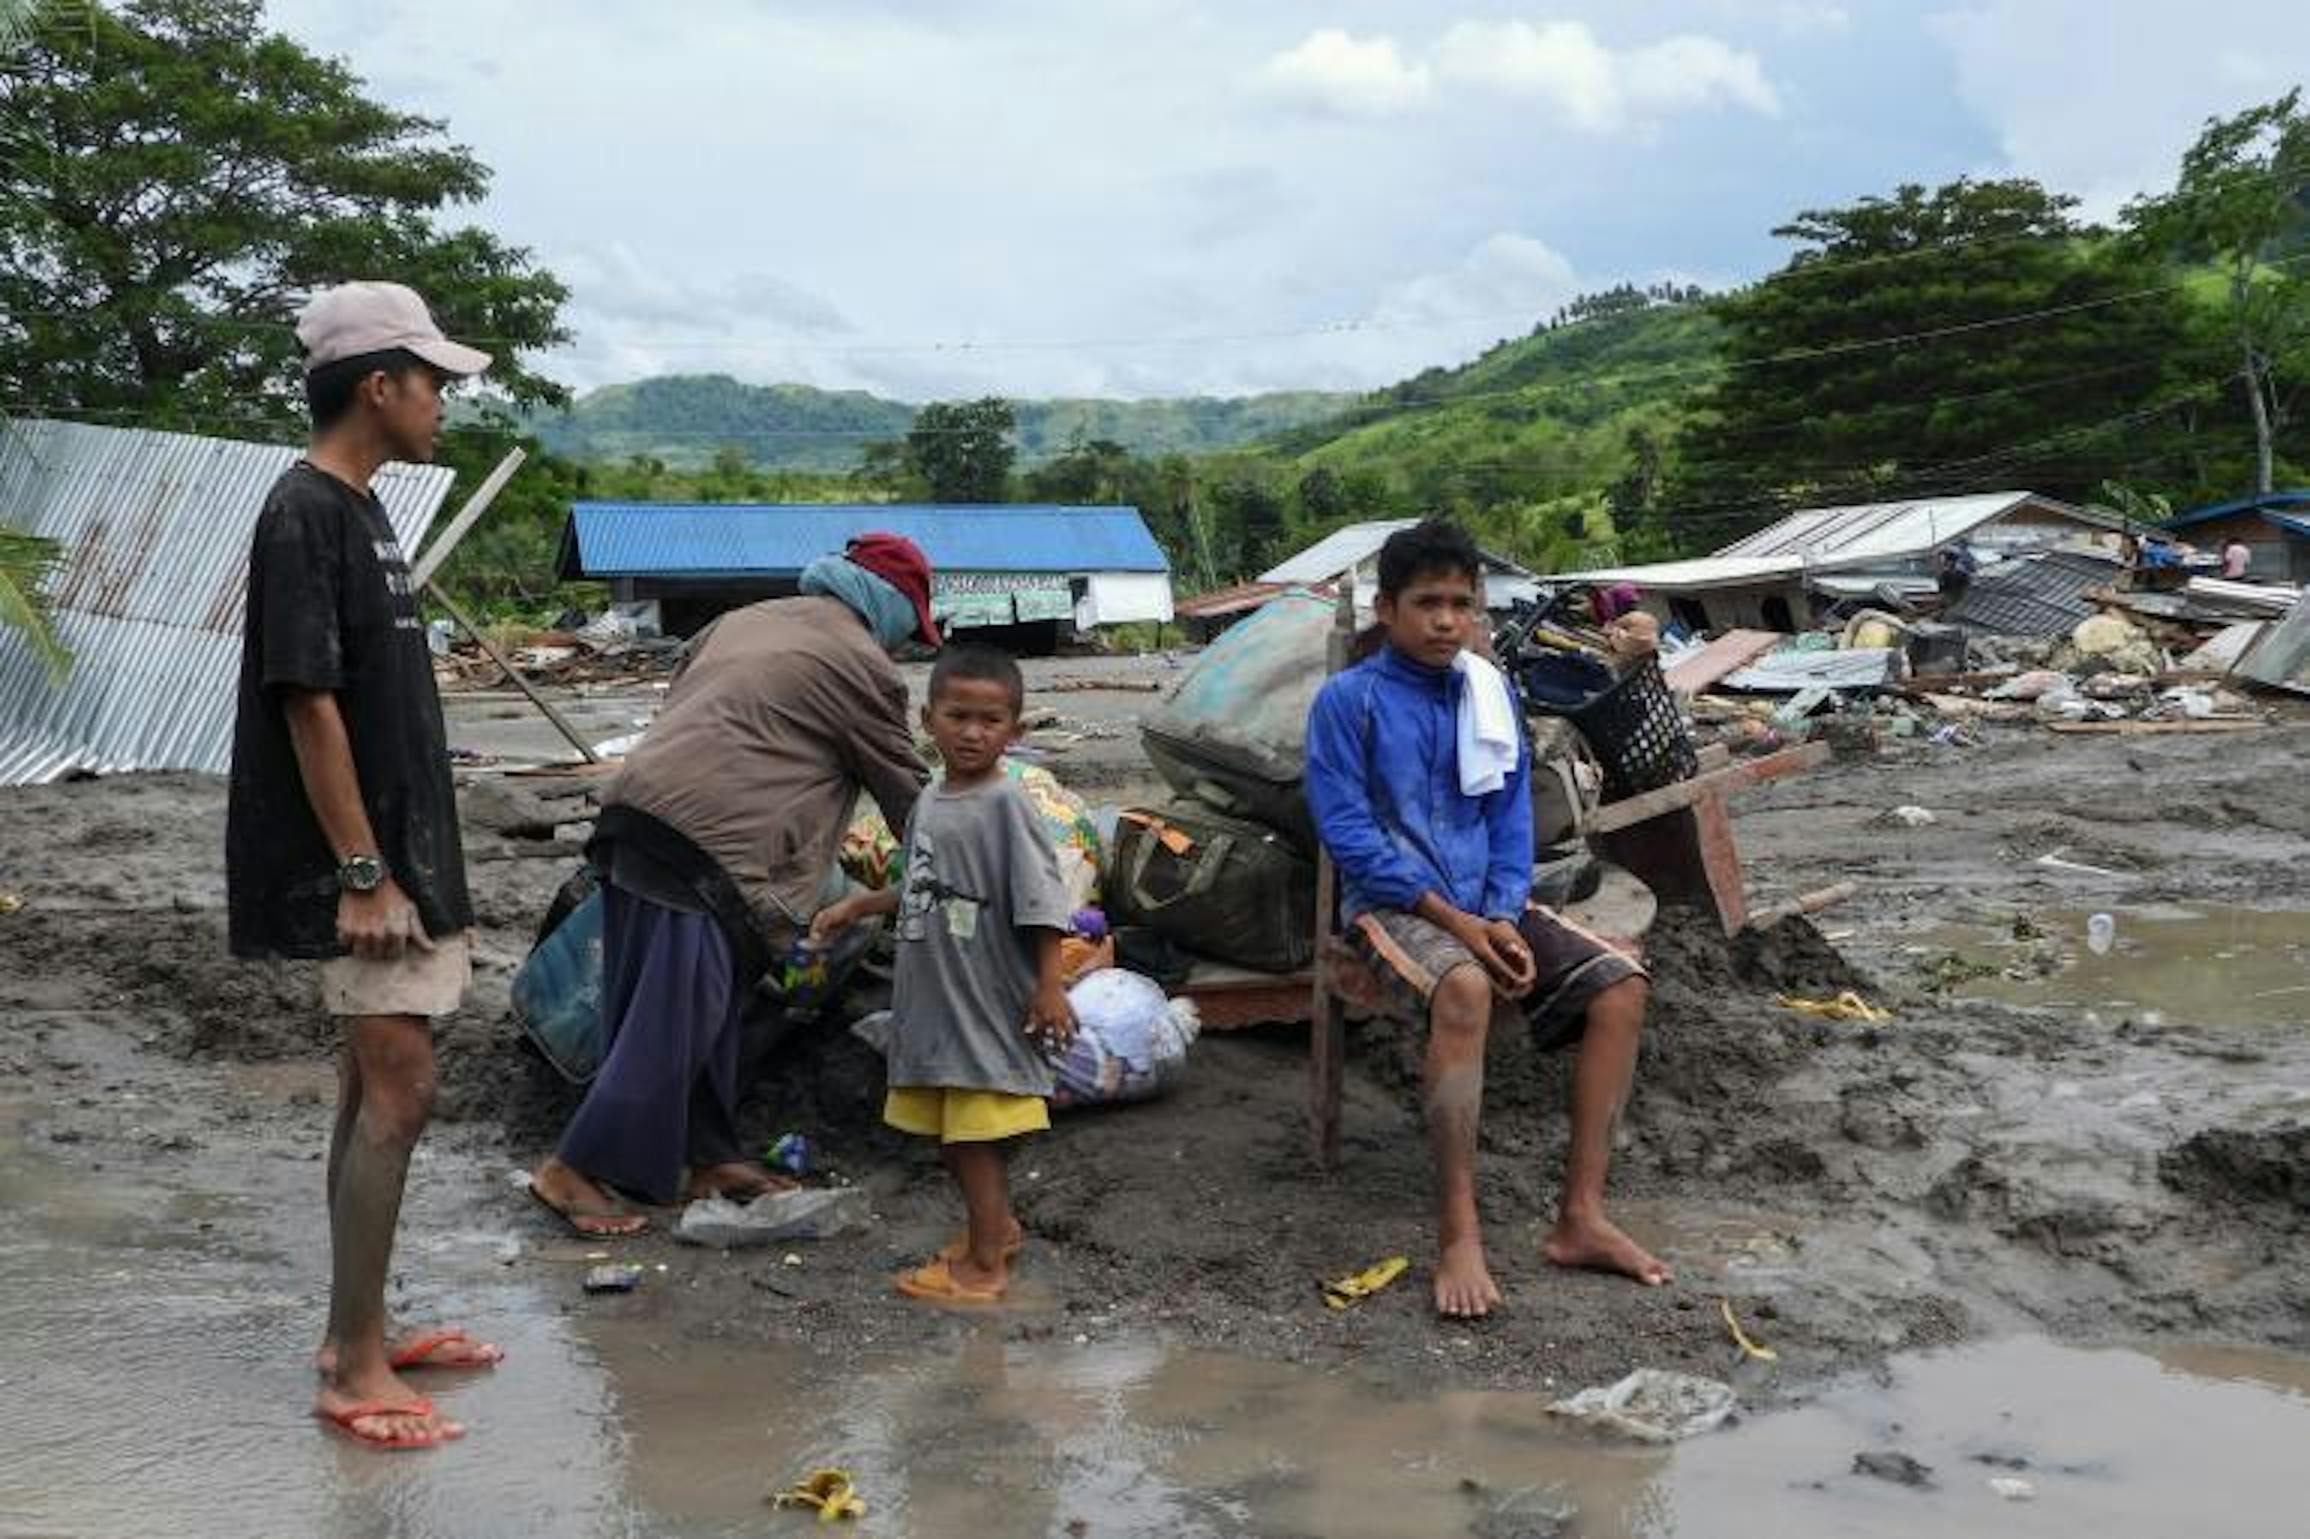 Le inondazioni provocate dal ciclone Paeng (Nalgae) nelle FIlippine, 29 ottobre 2022.